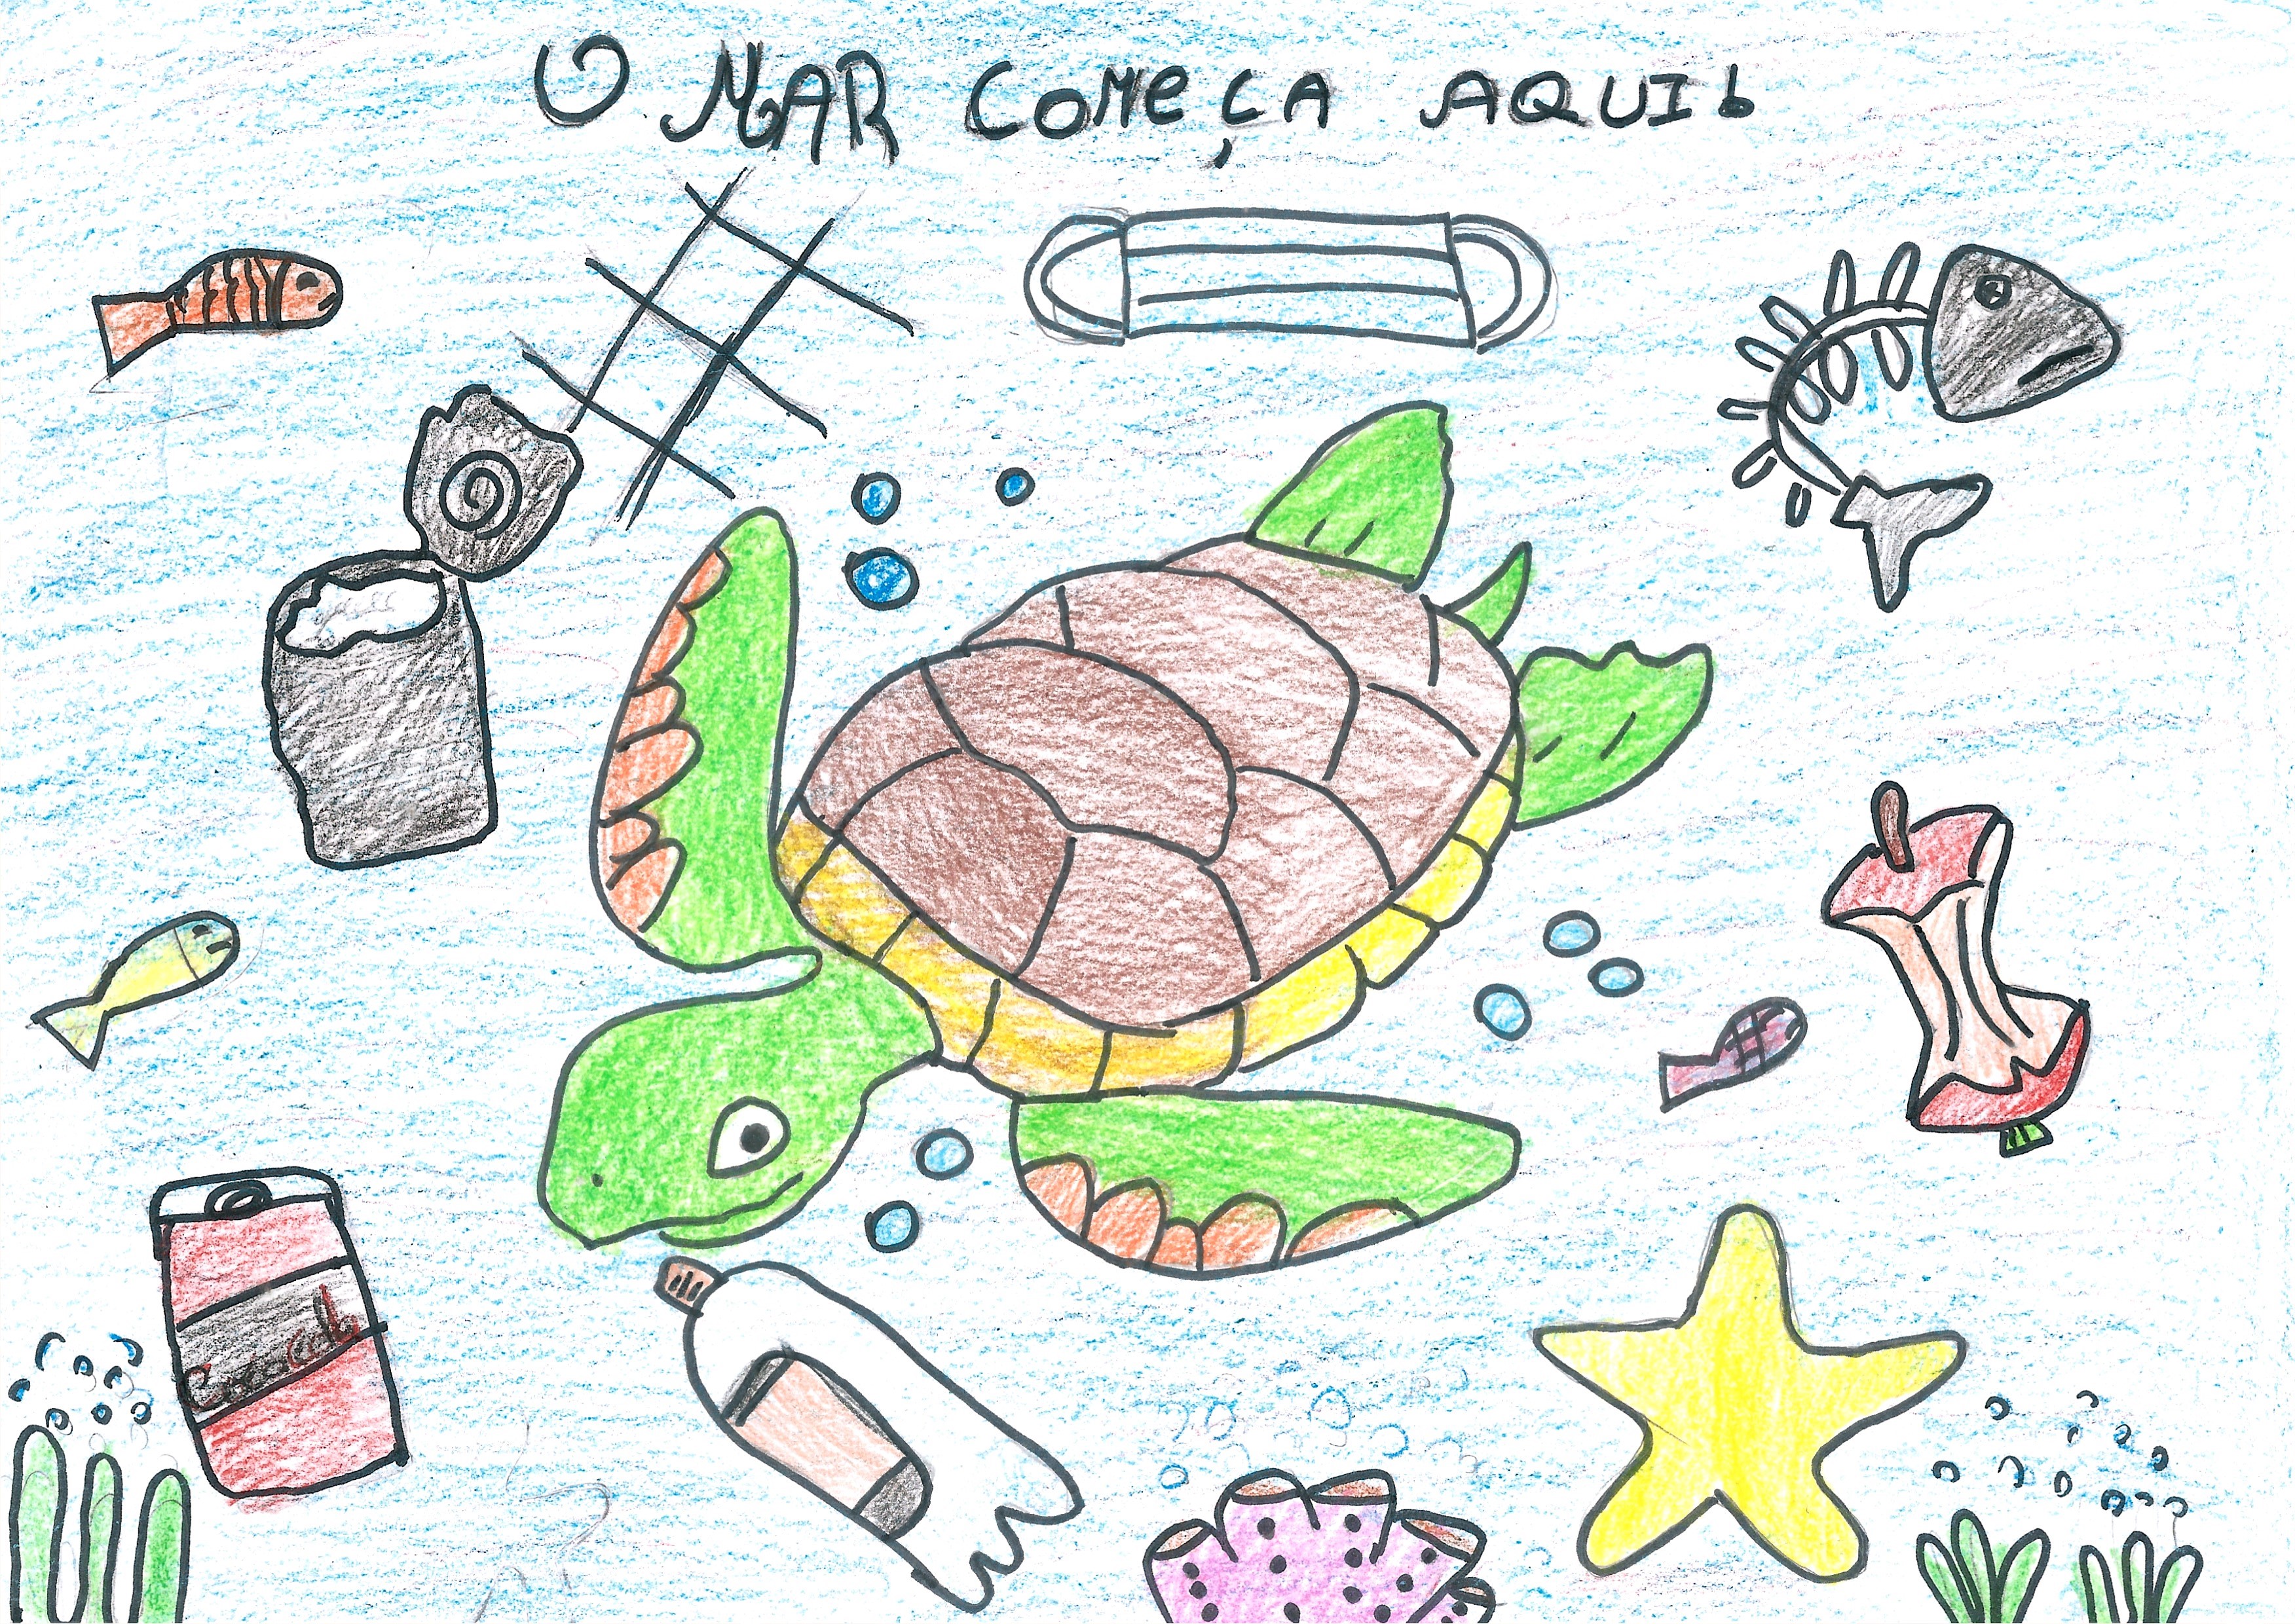 O Mar começa aqui!<br />
Desenho realizado por uma aluna do 4.º ano, no âmbito de duas saídas para recolha de lixo marinho.<br />
Em grande plano pode ver-se uma tartaruga marinha rodeada por lixo.